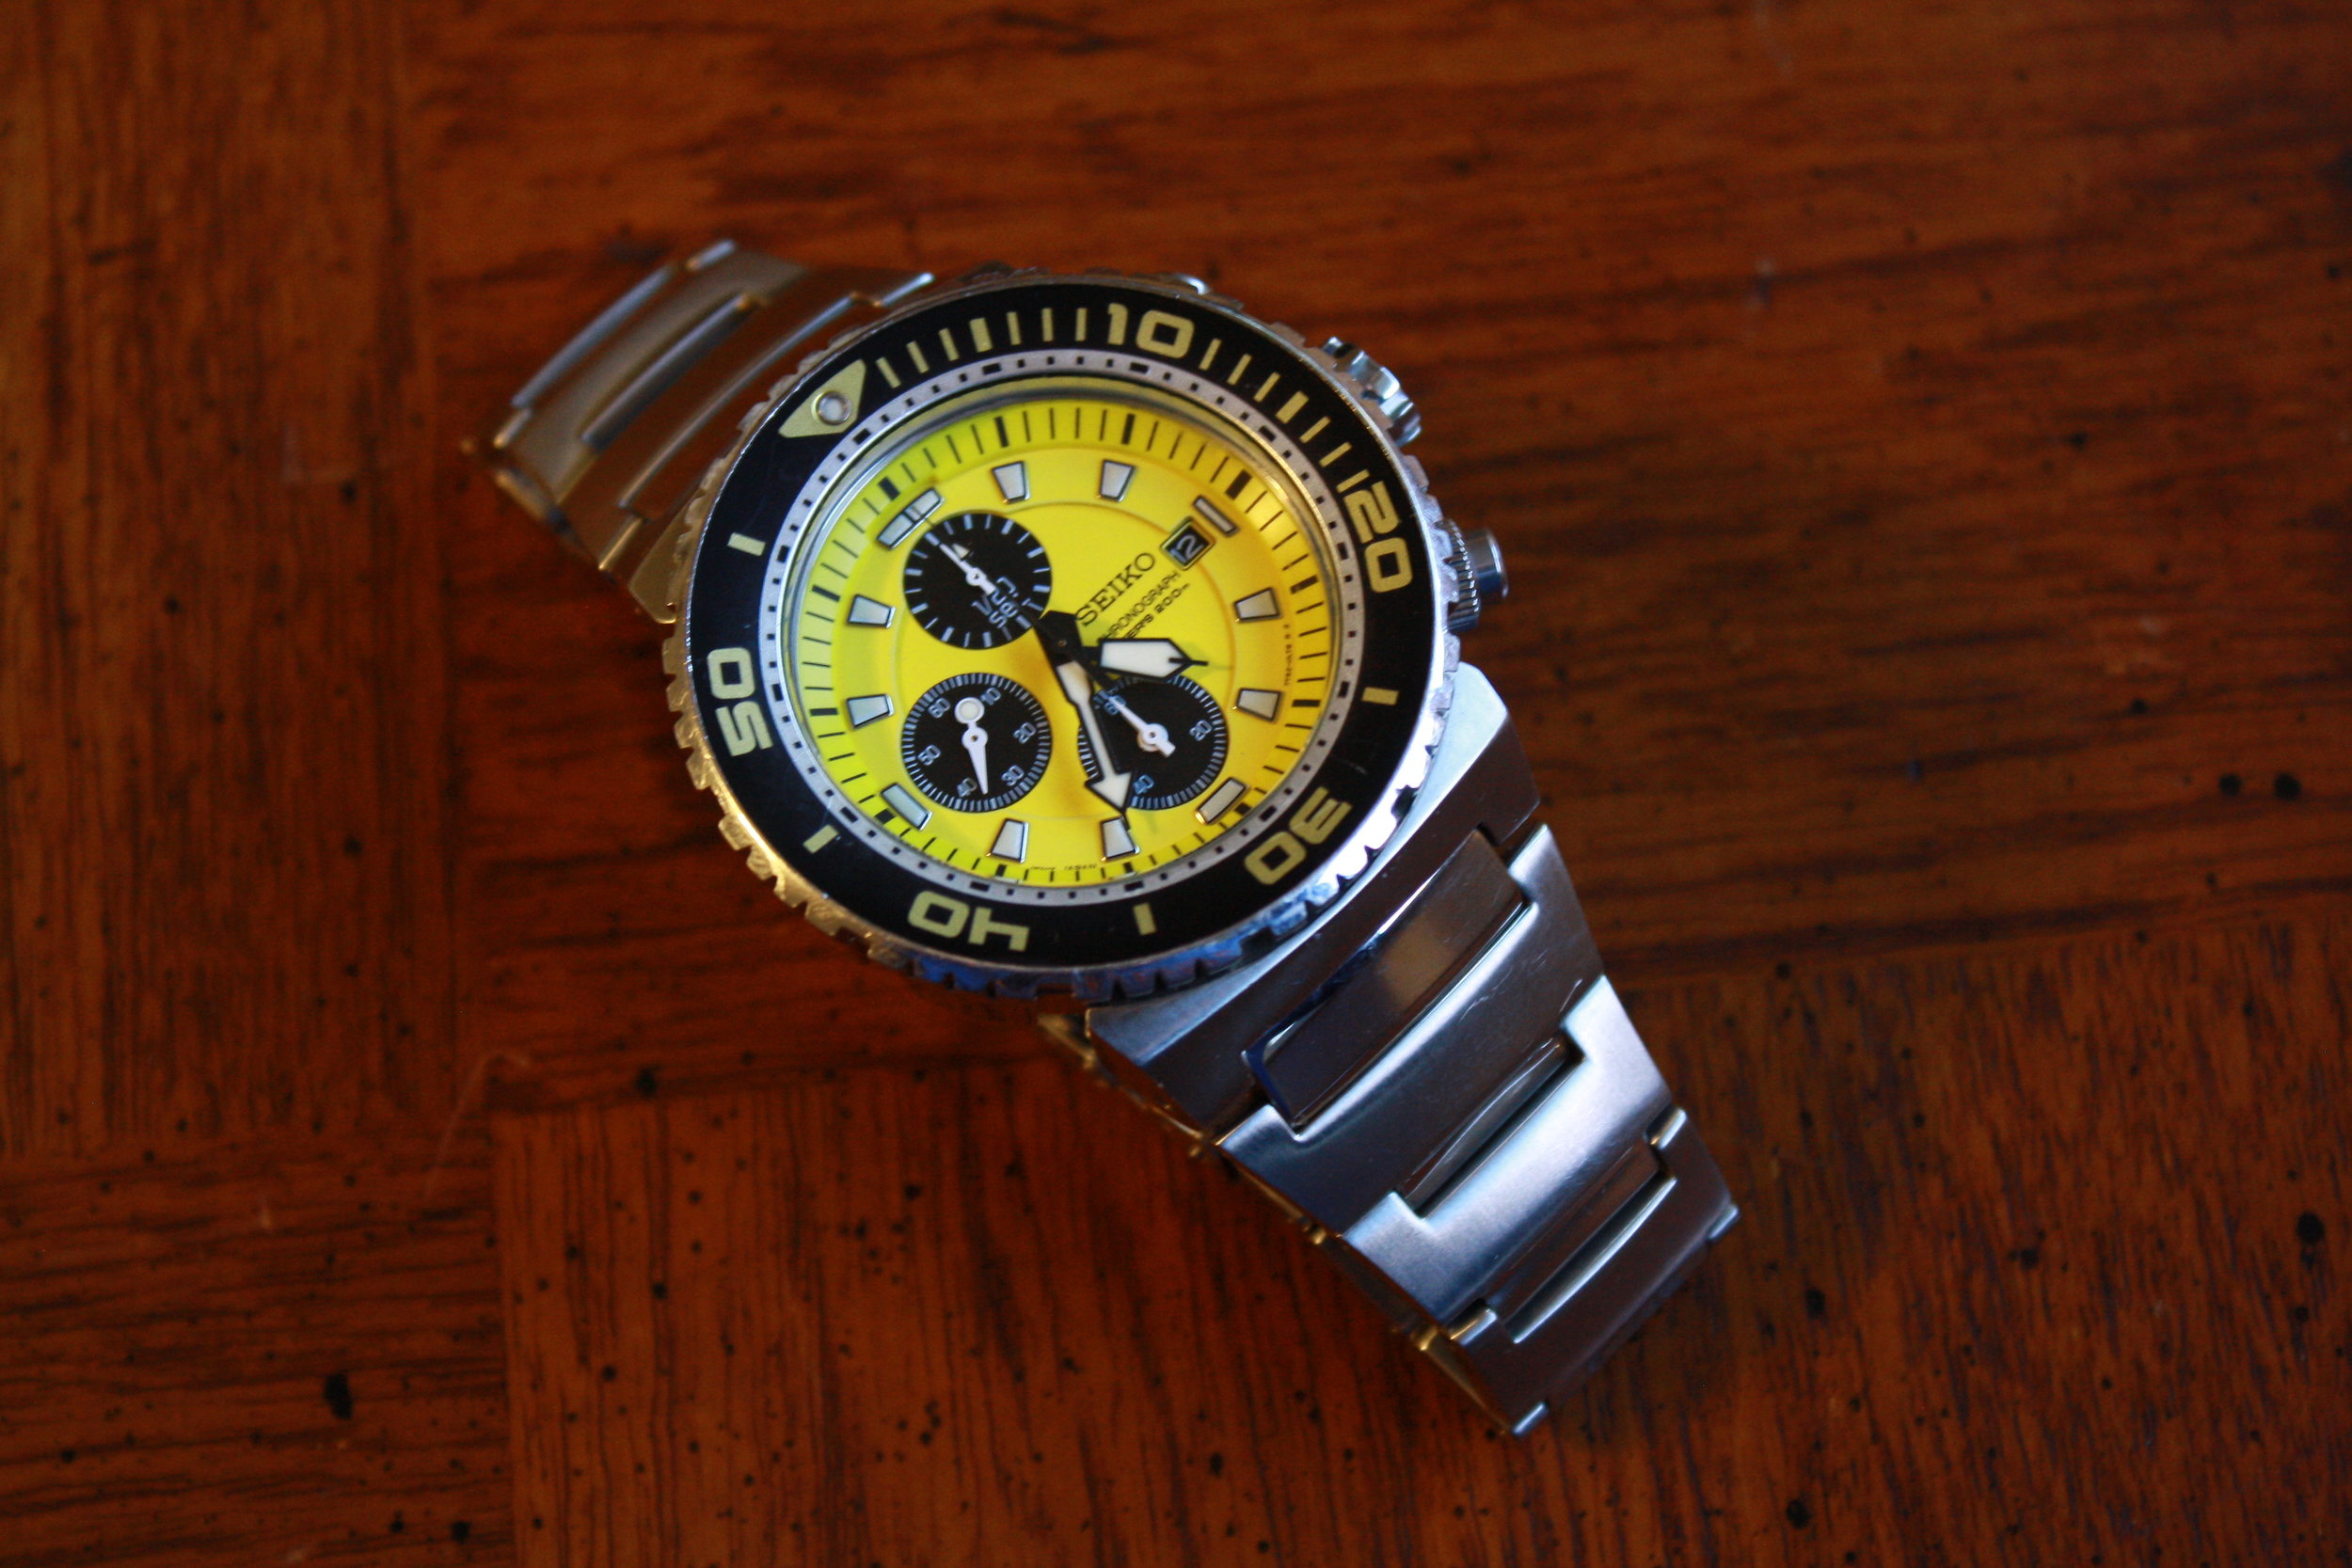 Seiko 'Caesar' SNDA15 (7T92-0JG0) 200m Dive Watch - Yellow! — Klein Vintage  Watch